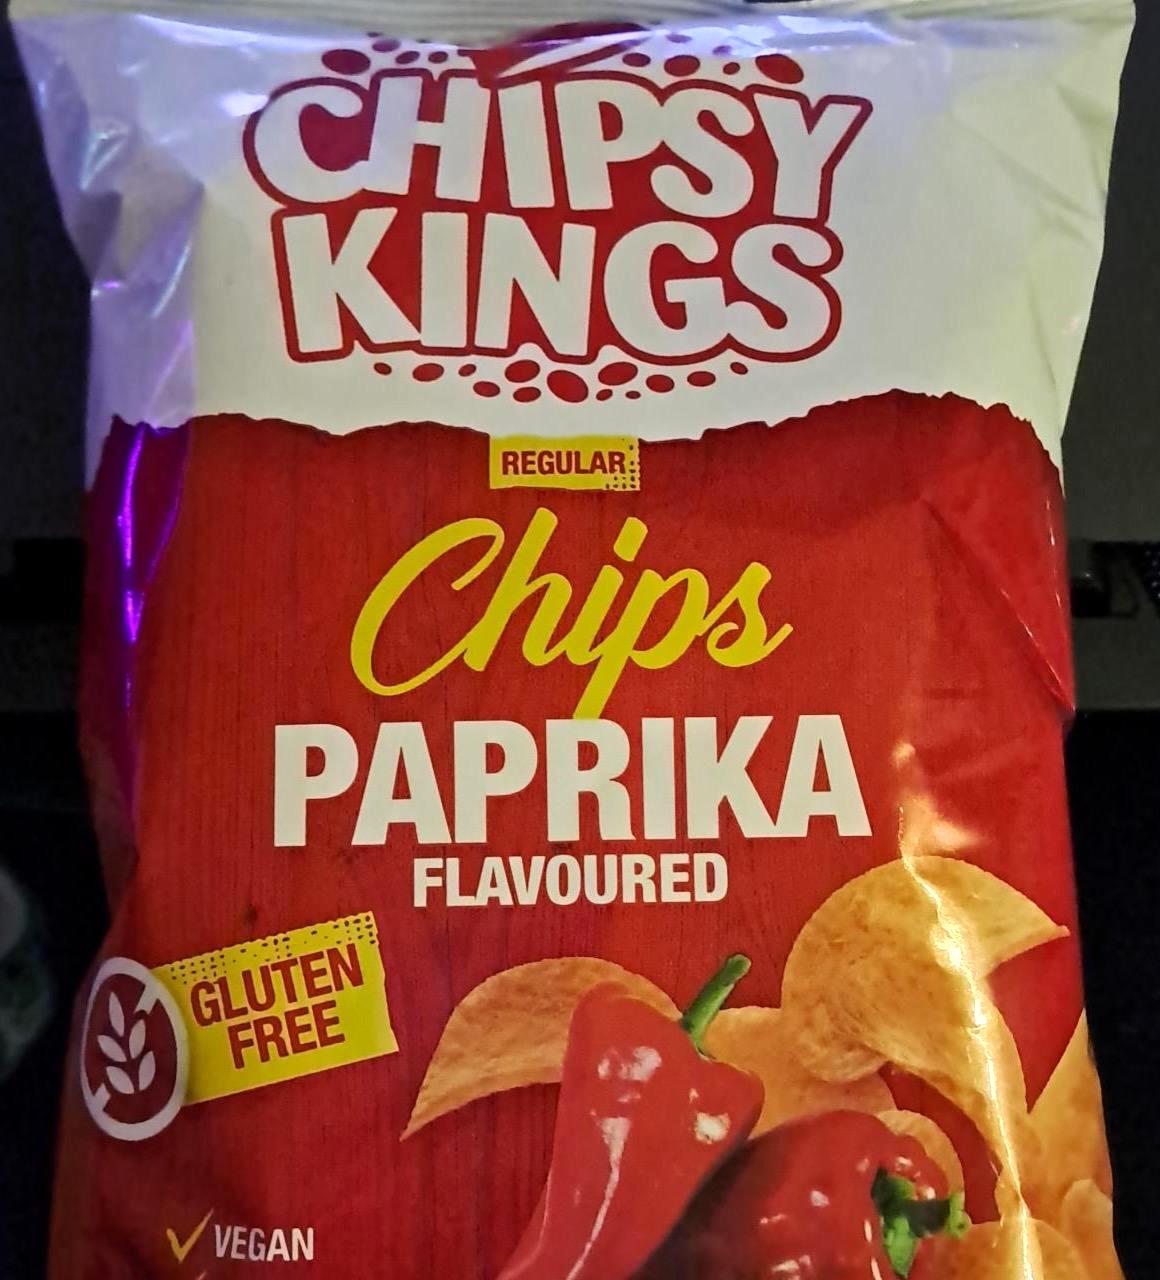 Képek - Chips paprika flavoured Chipsy kings